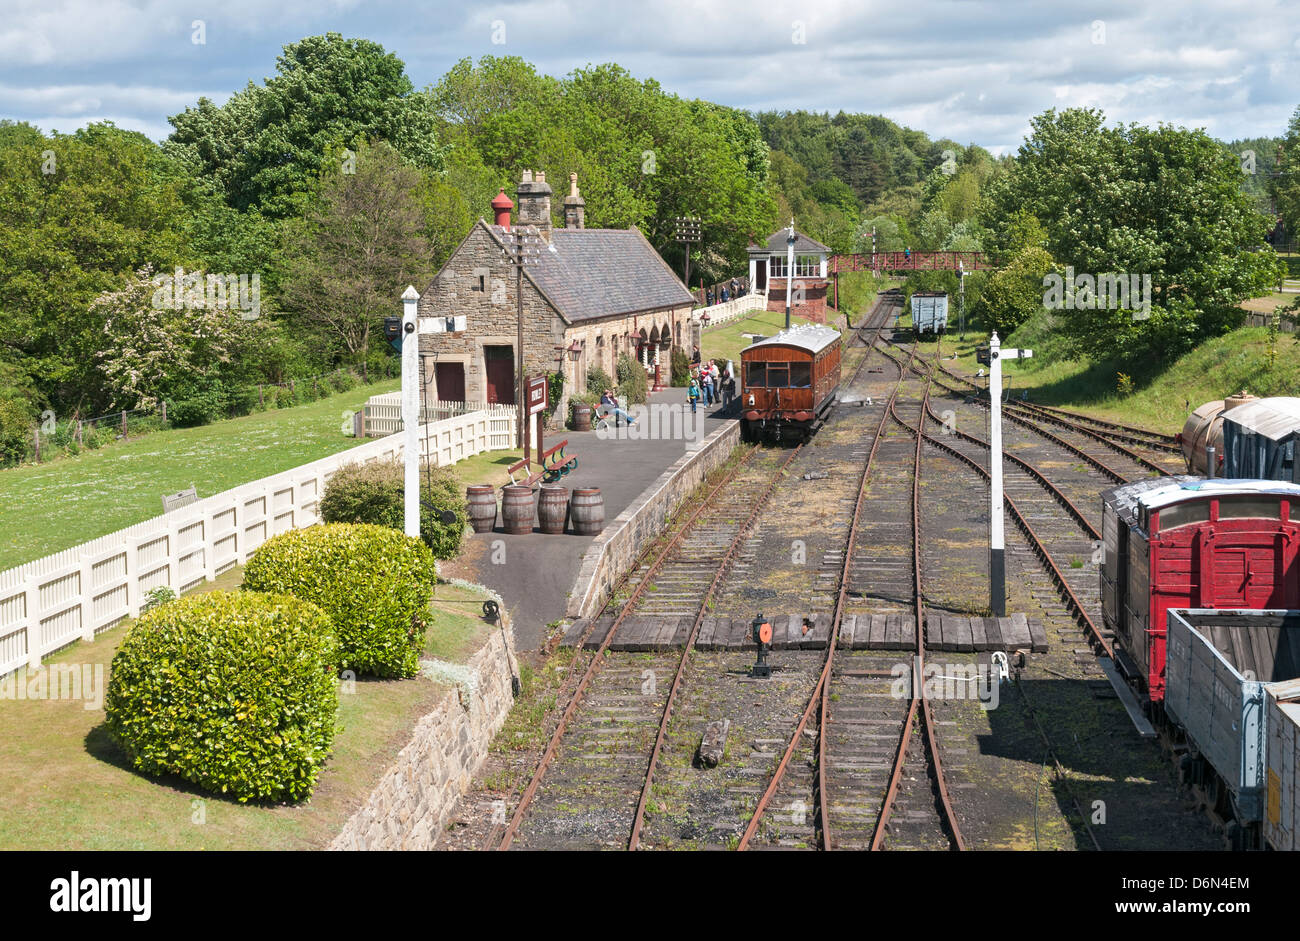 Gran Bretaña, Beamish, al norte de Inglaterra Open-Air Living History Museum, la Estación de Tren Foto de stock